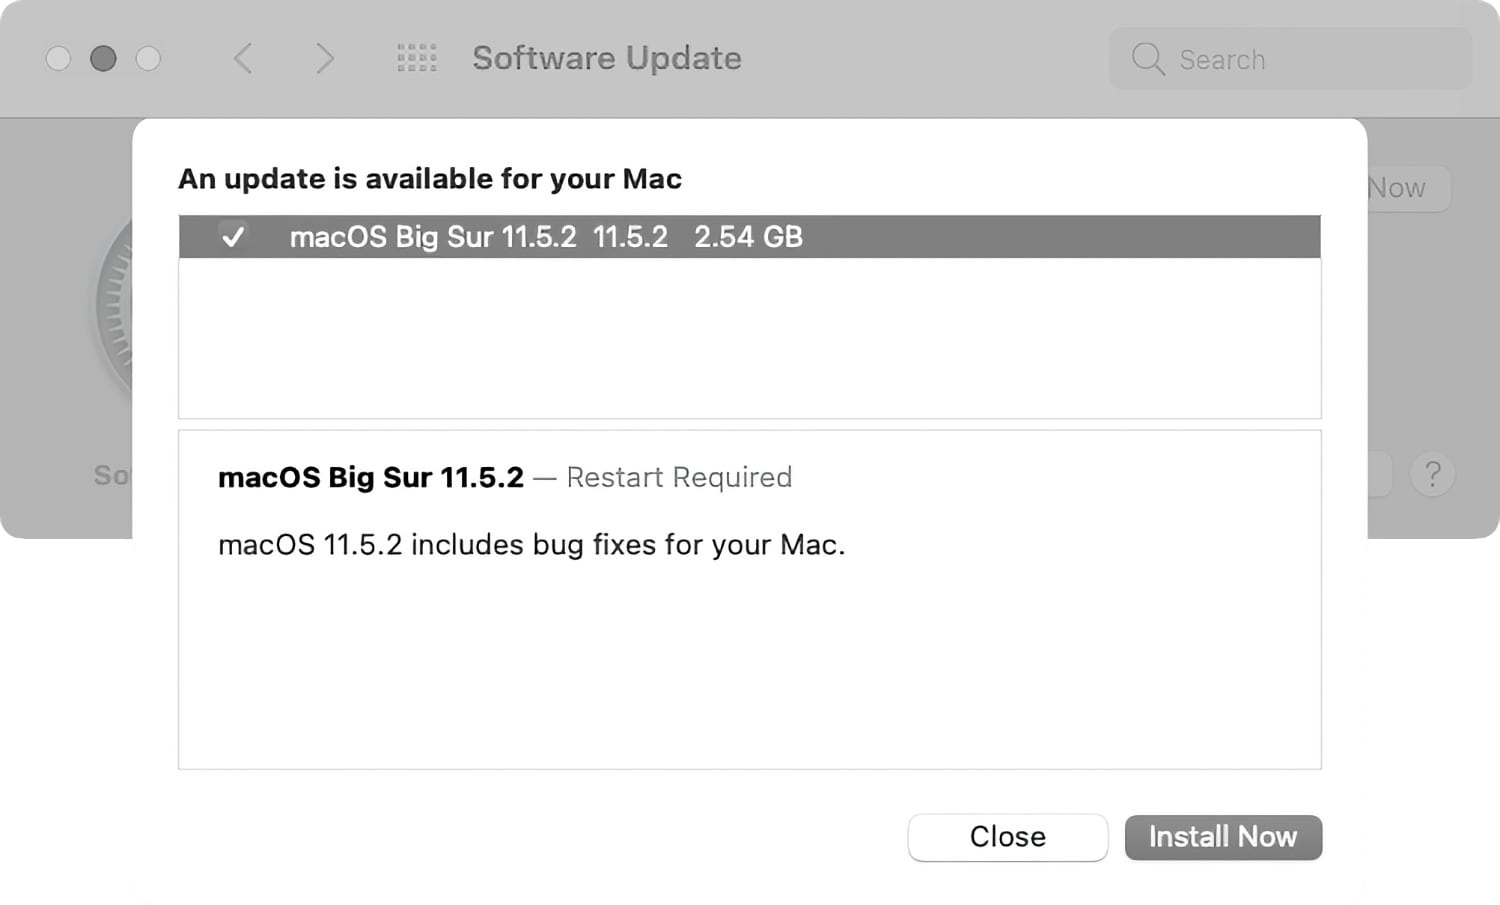 macos big sur 11.5.1 features